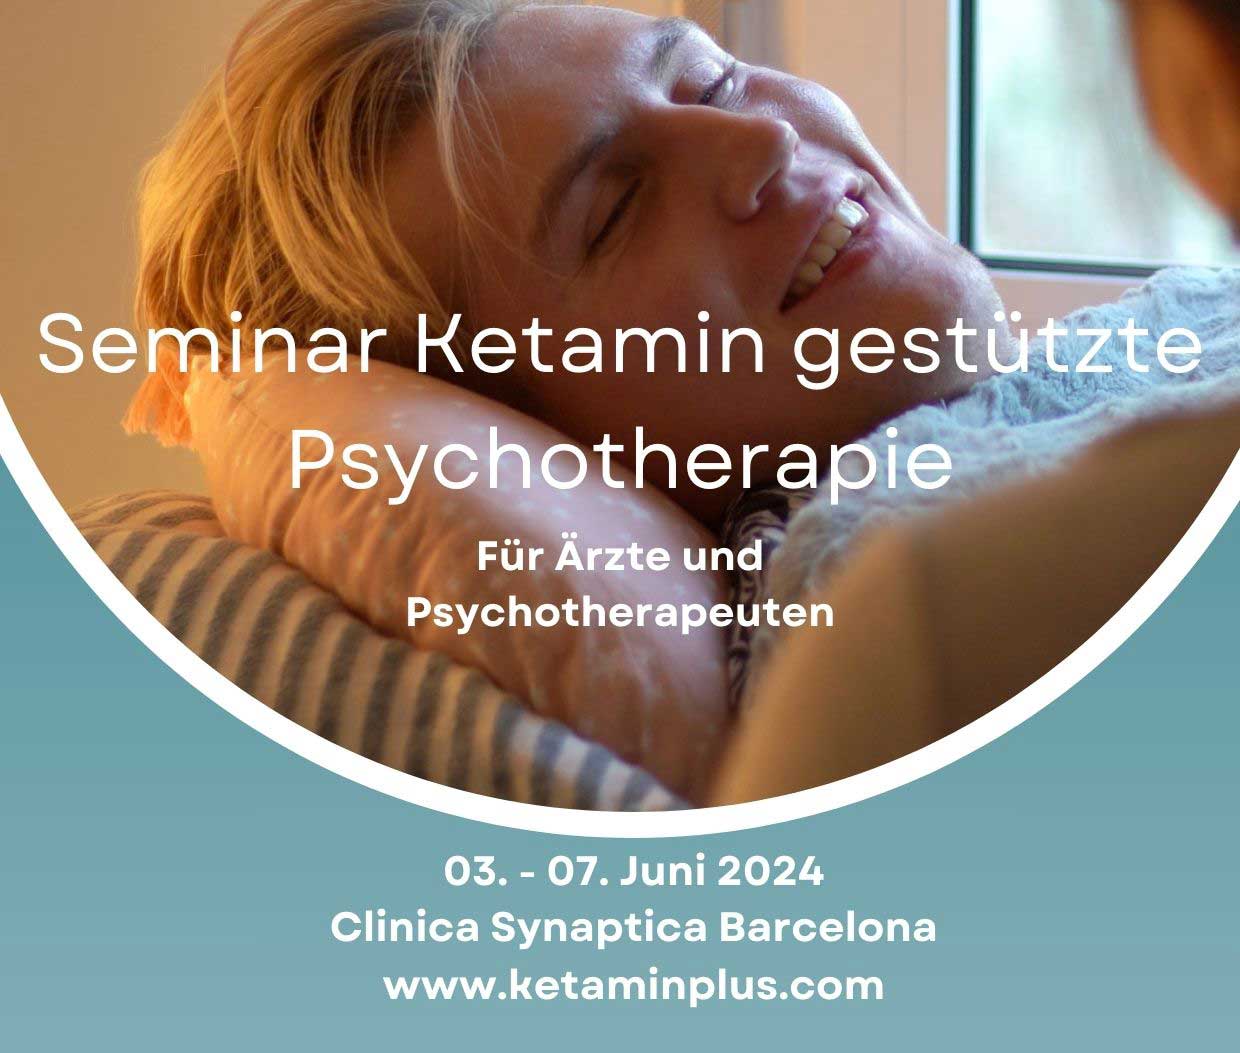 Seminar Ketamingestützte Psychotherapie 2024